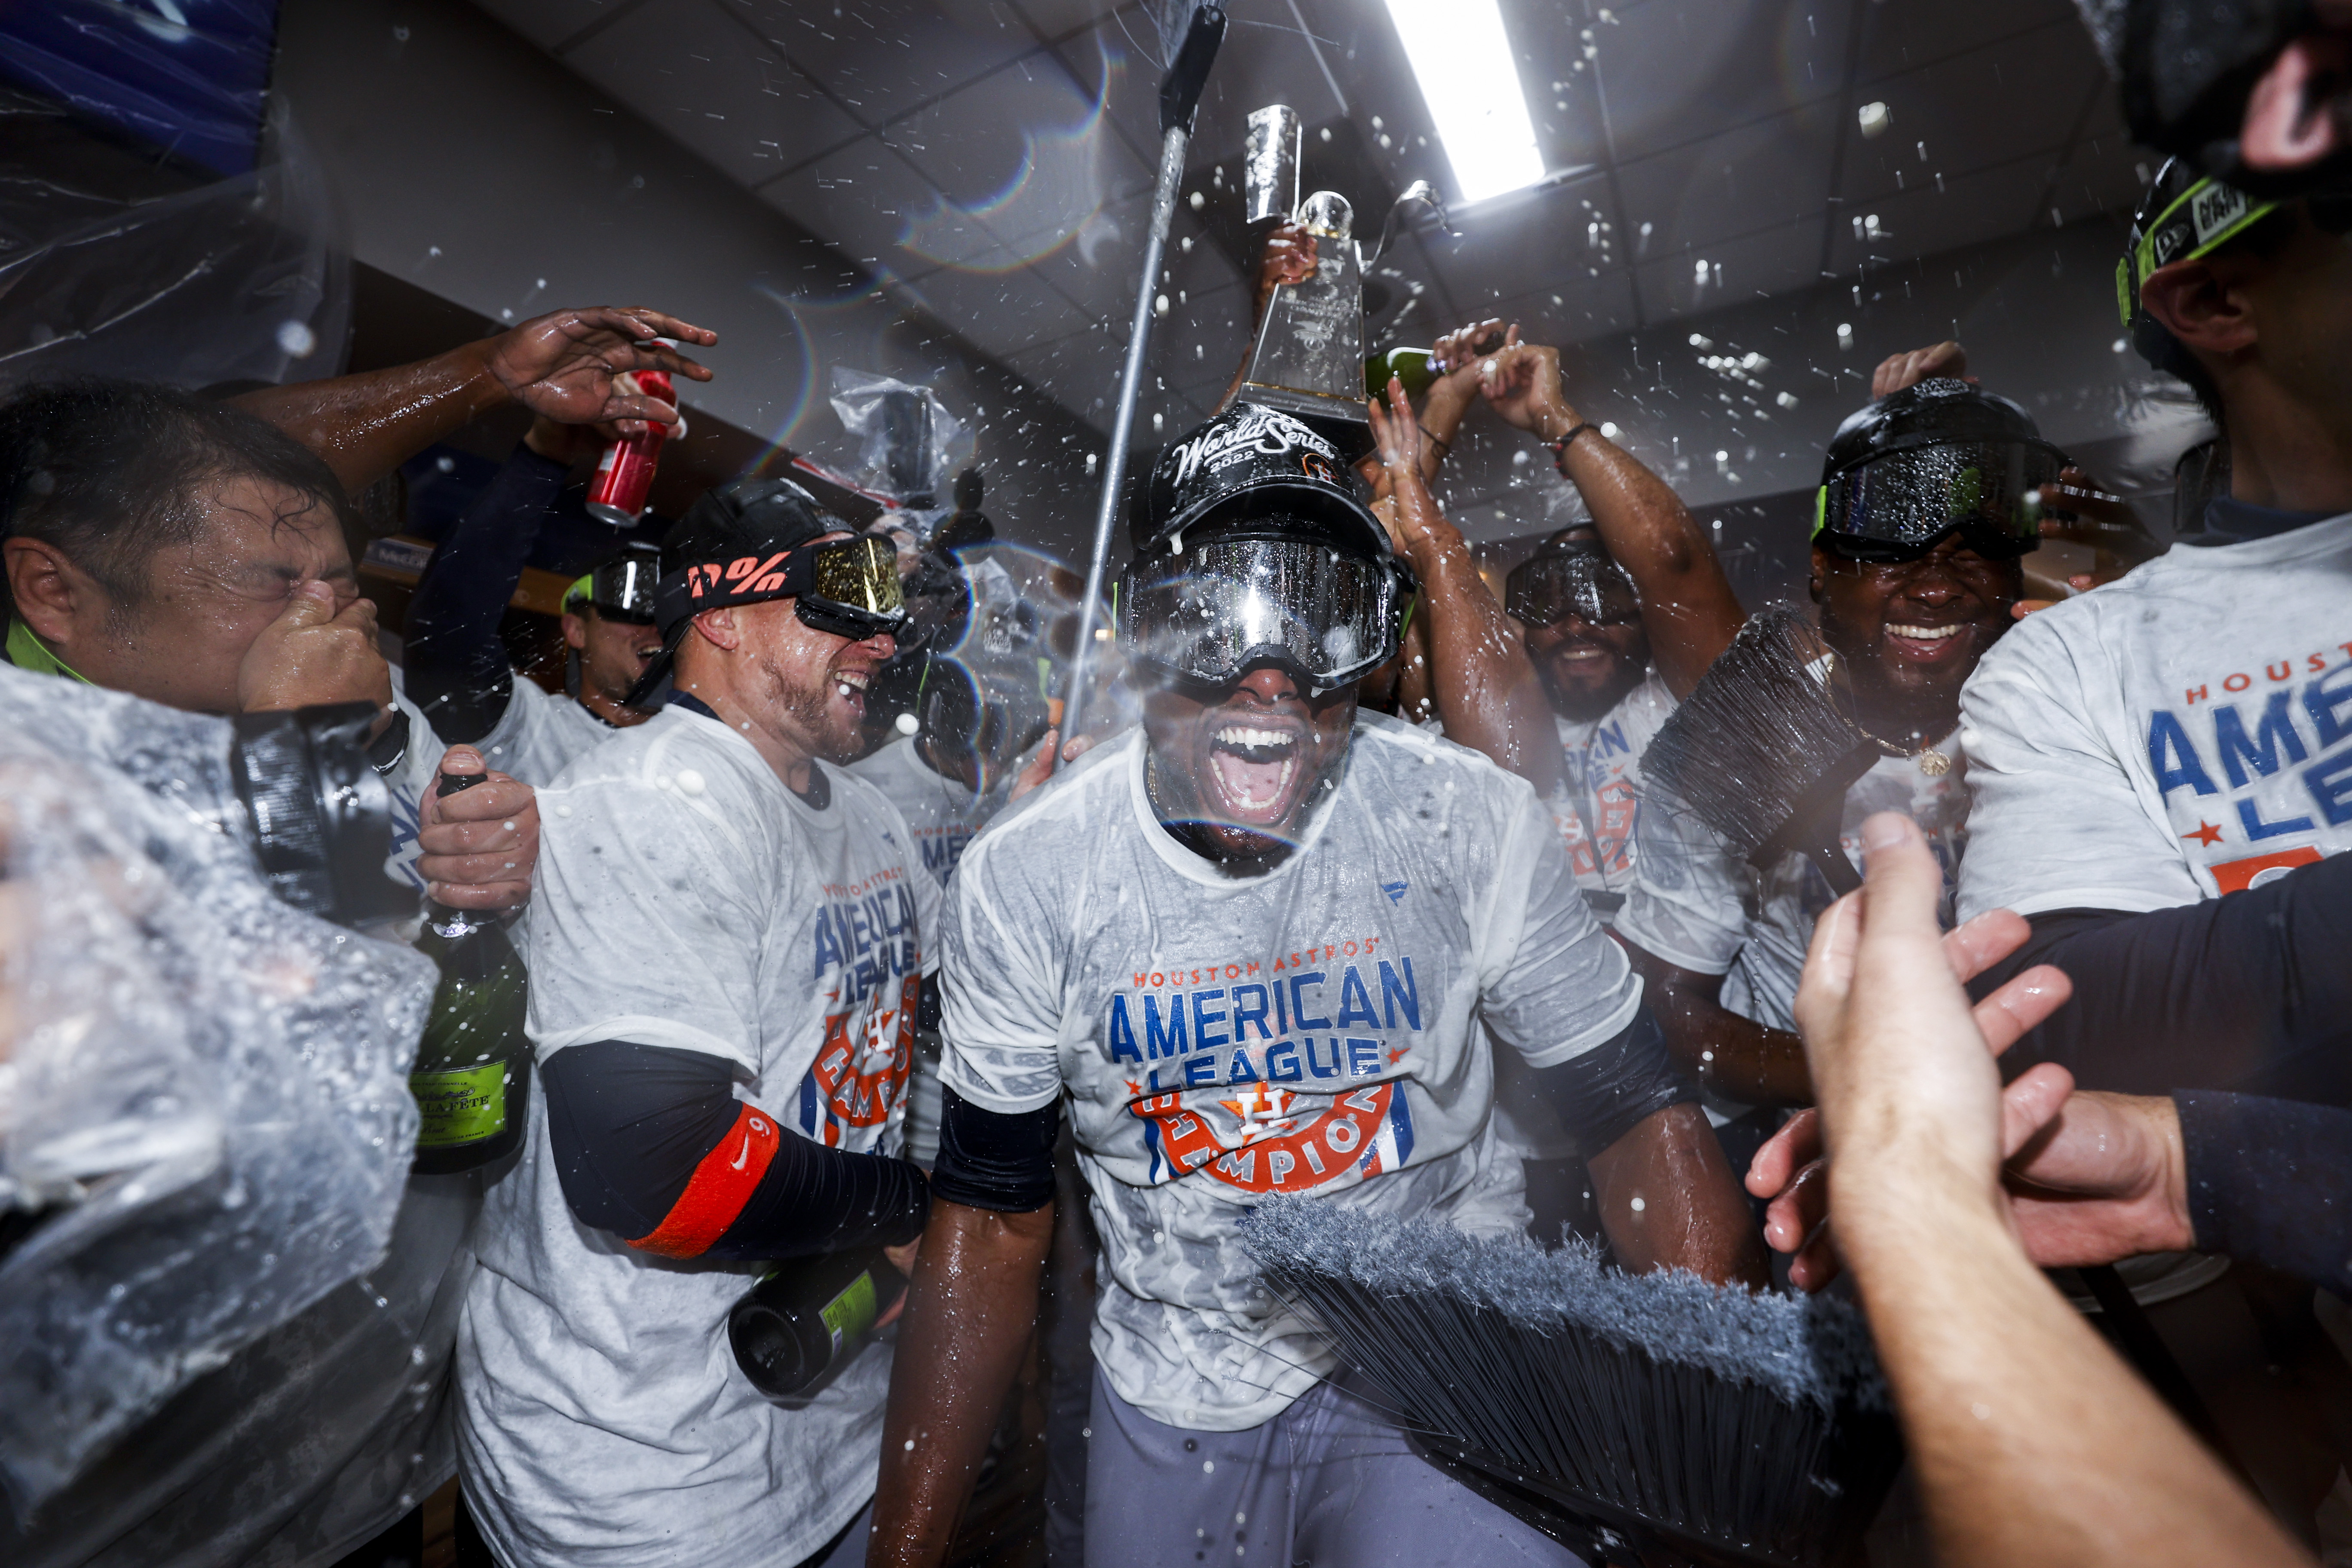 Cheating scandal still looms around World Series-bound Houston Astros